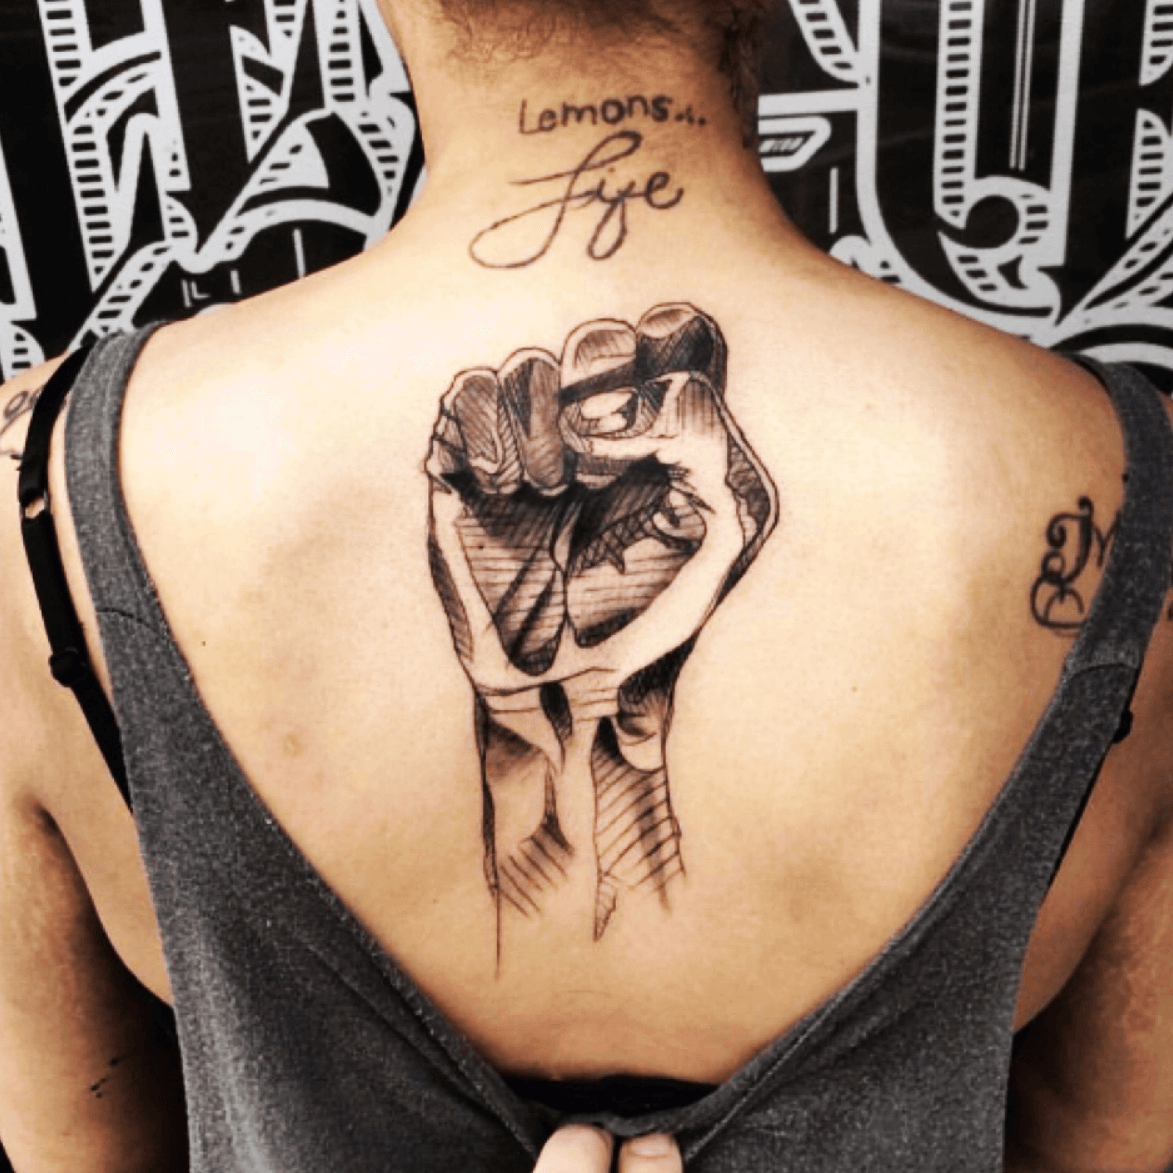 Tattoo uploaded by BillyOne Tattoo  Fresh fist tattoo  Tattoodo